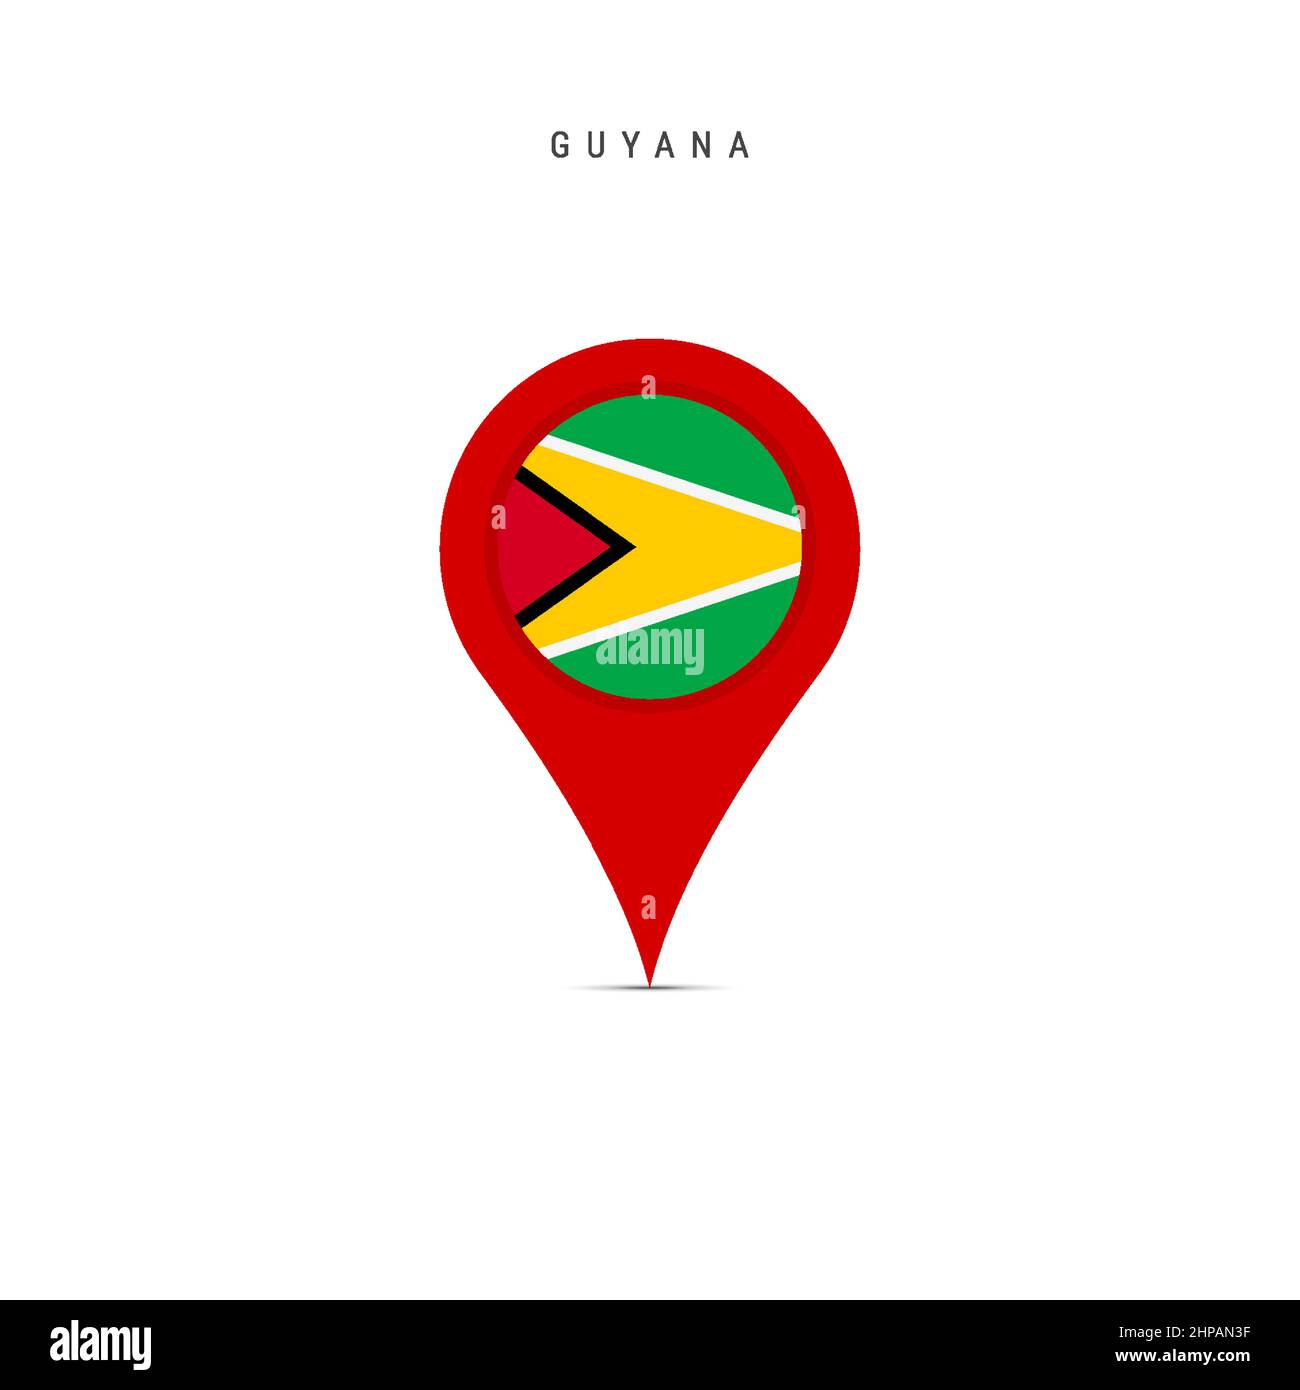 Teardrop-Kartenmarkierung mit Flagge von Guyana. Guyanische Flagge in den Pin der Standortkarte eingefügt. Flache Vektorgrafik isoliert auf weißem Hintergrund. Stock Vektor